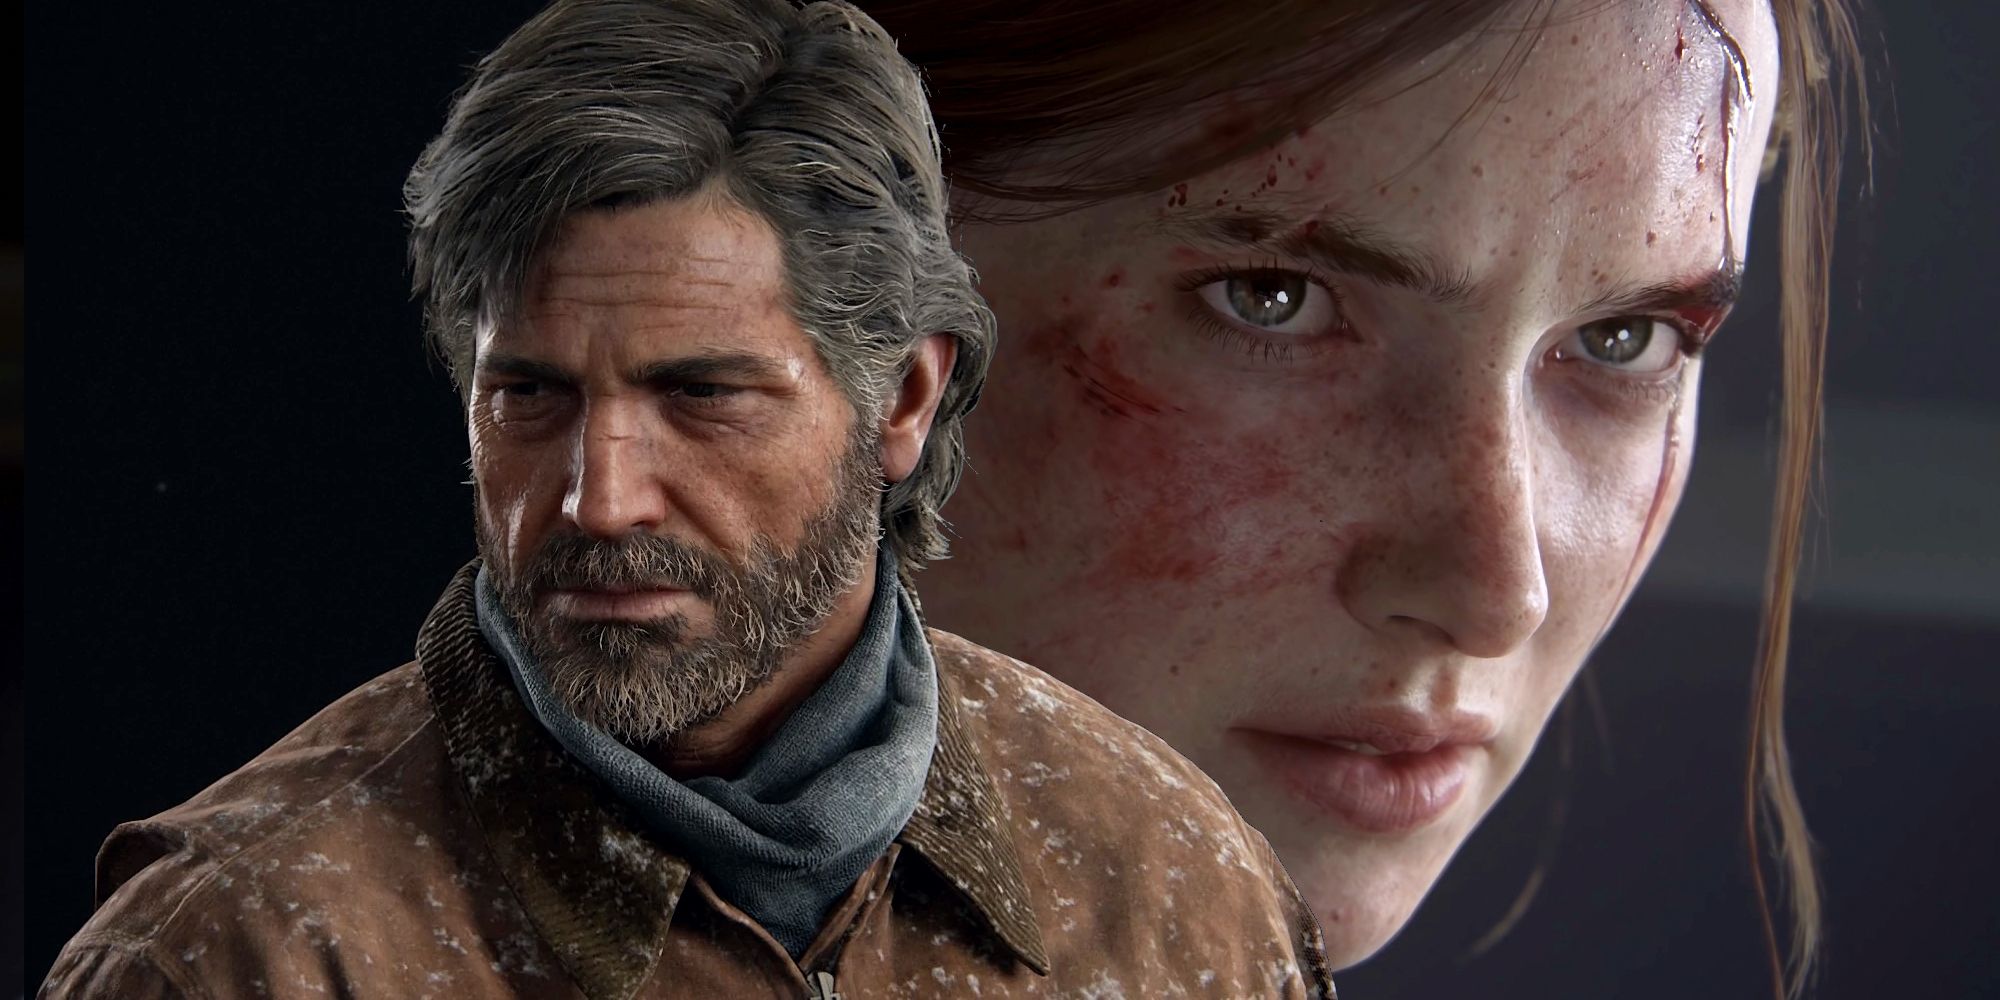 Joel de The Last of Us Part 1 a l'air solennel à côté d'un gros plan d'Ellie de The Last of Us Part 2 qui a l'air en colère contre le sang qui coule de son front.